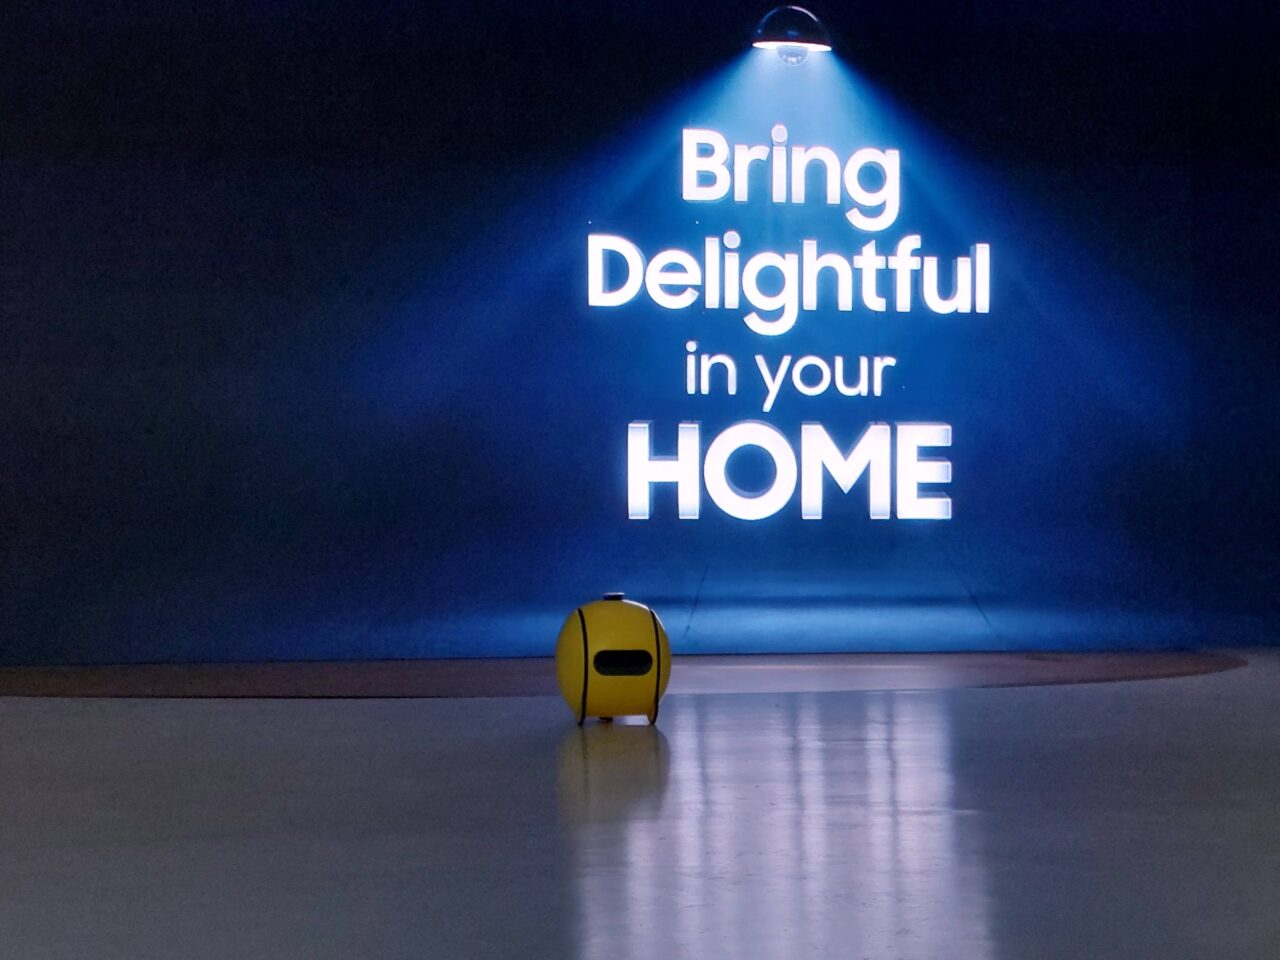 Przedstawienie małego, żółtego robota Samsung Ballie stojącego na podłodze w pomieszczeniu z niebieskim oświetleniem i napisem na ścianie "Bring Delightful in your HOME" w tle.